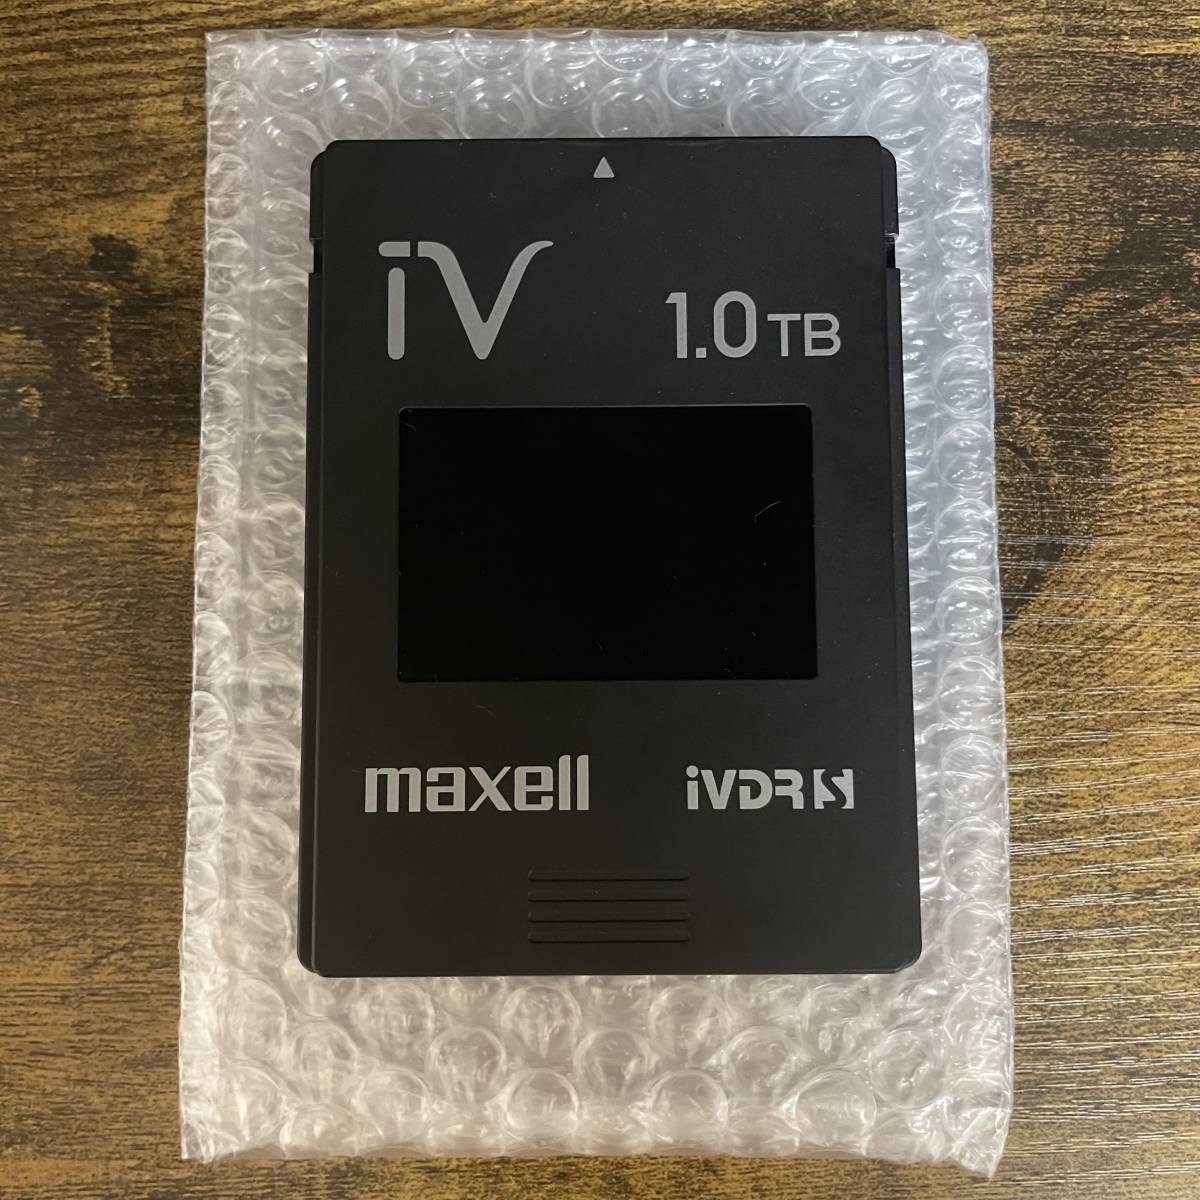 IVDR maxell マクセル iVDR-S カセットハードディスク 1TB 黒 ブラック